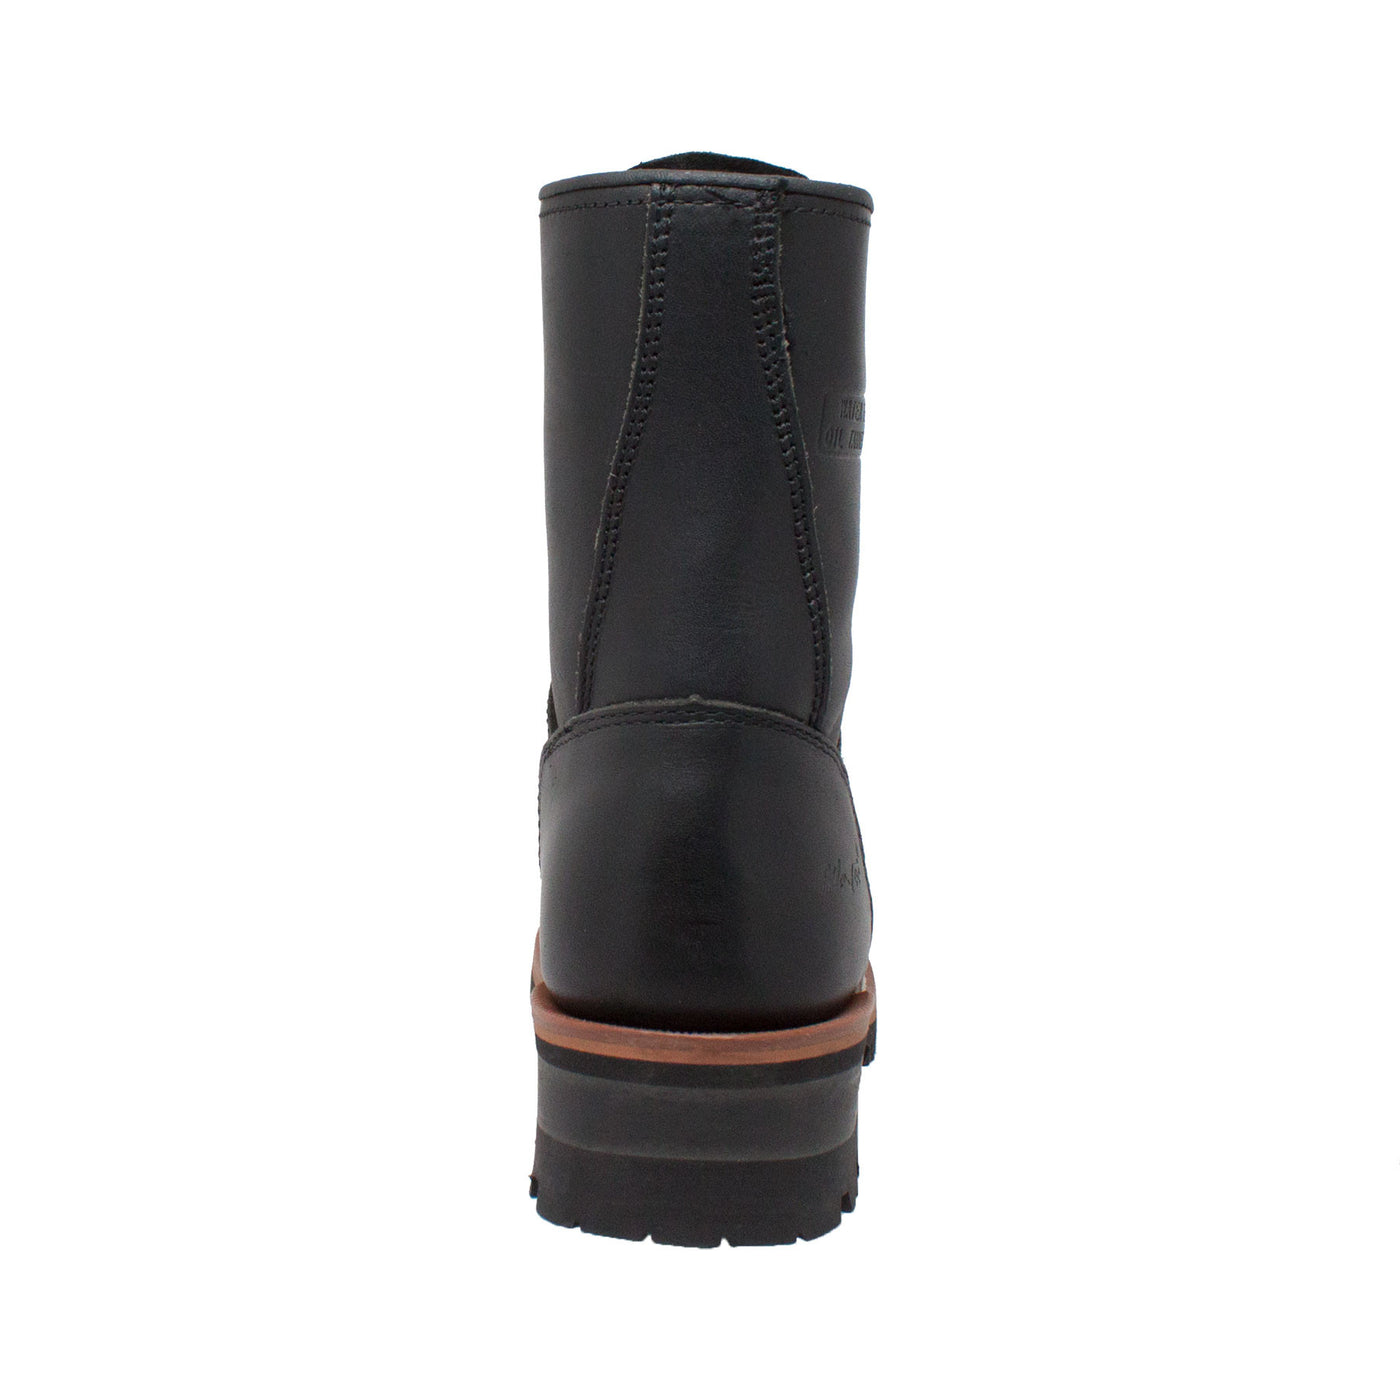 Women's 9" Logger Black - 2439 - Shop Genuine Leather men & women's boots online | AdTecFootWear